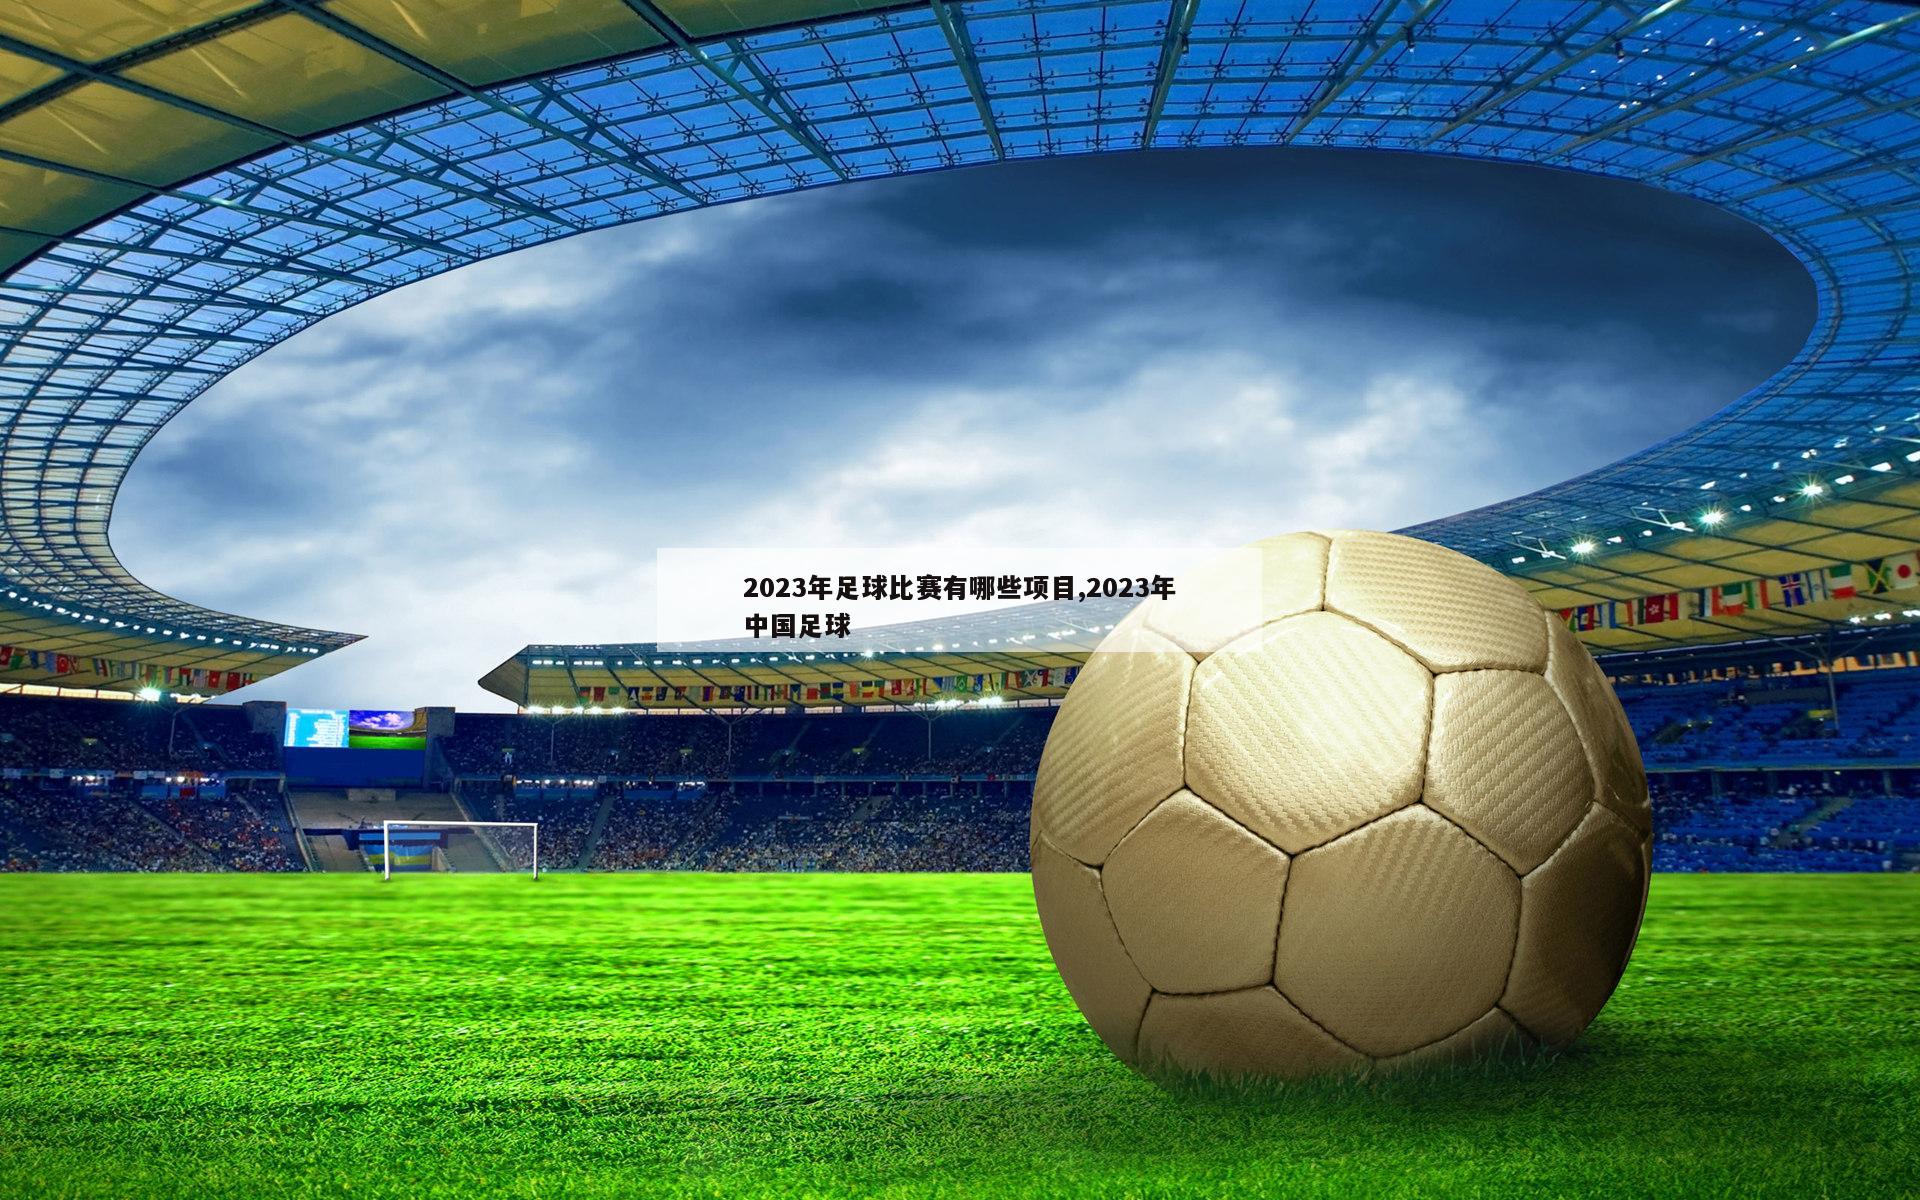 2023年足球比赛有哪些项目,2023年中国足球